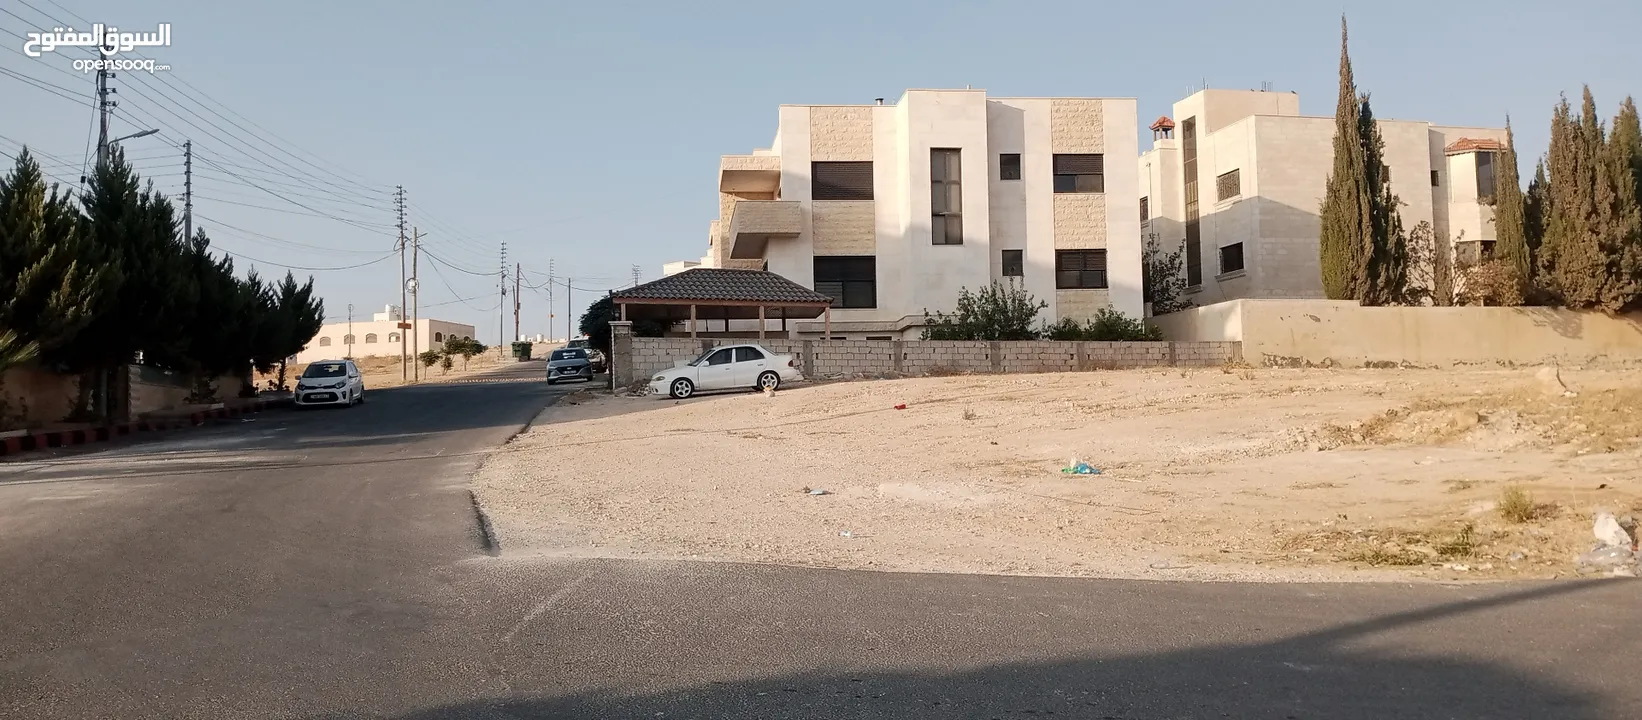 أرض للبيع في شفا بدران مرج الفرس كامل الخدمات